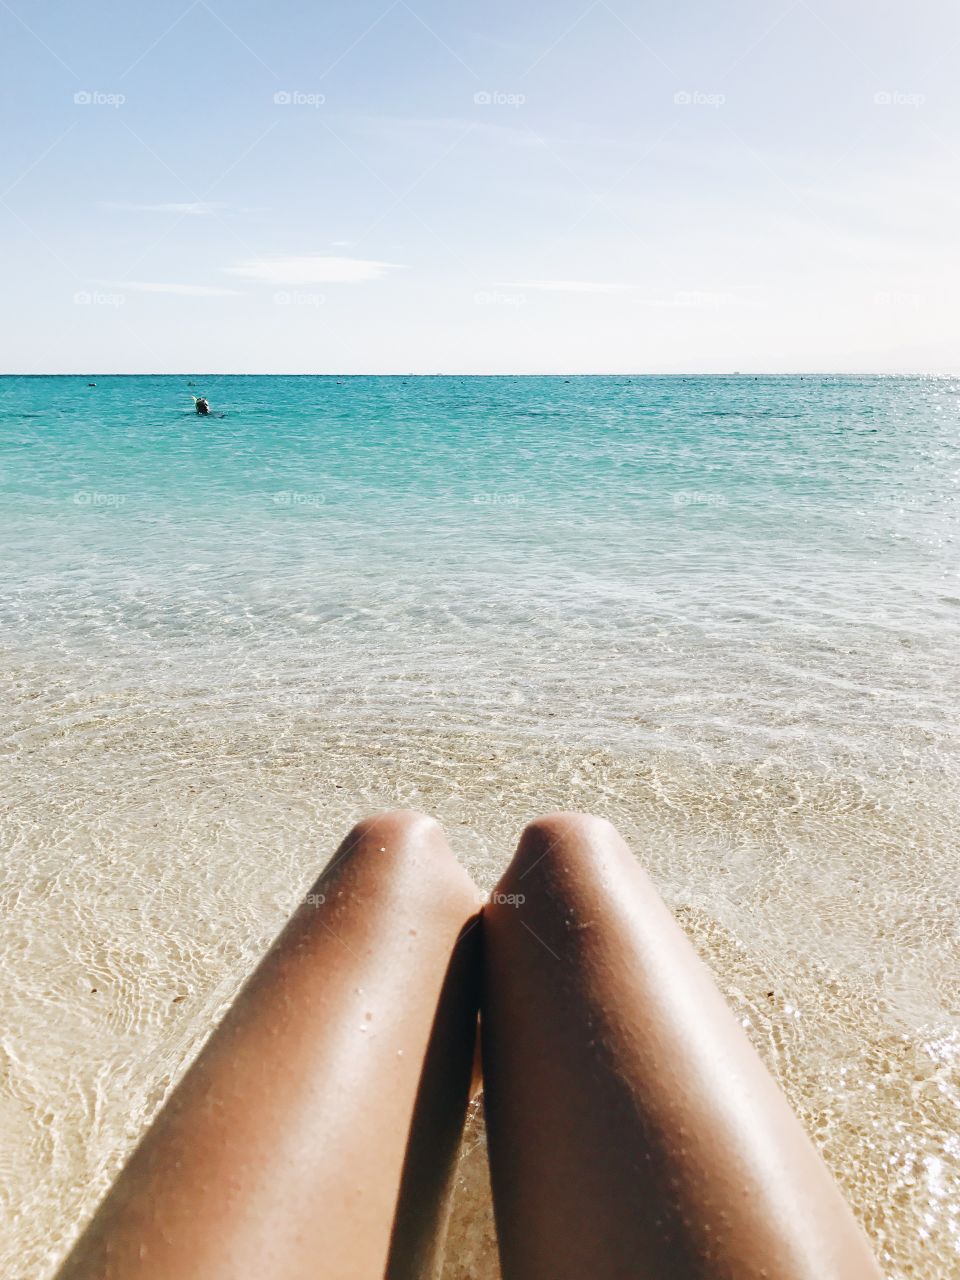 Legs by the ocean